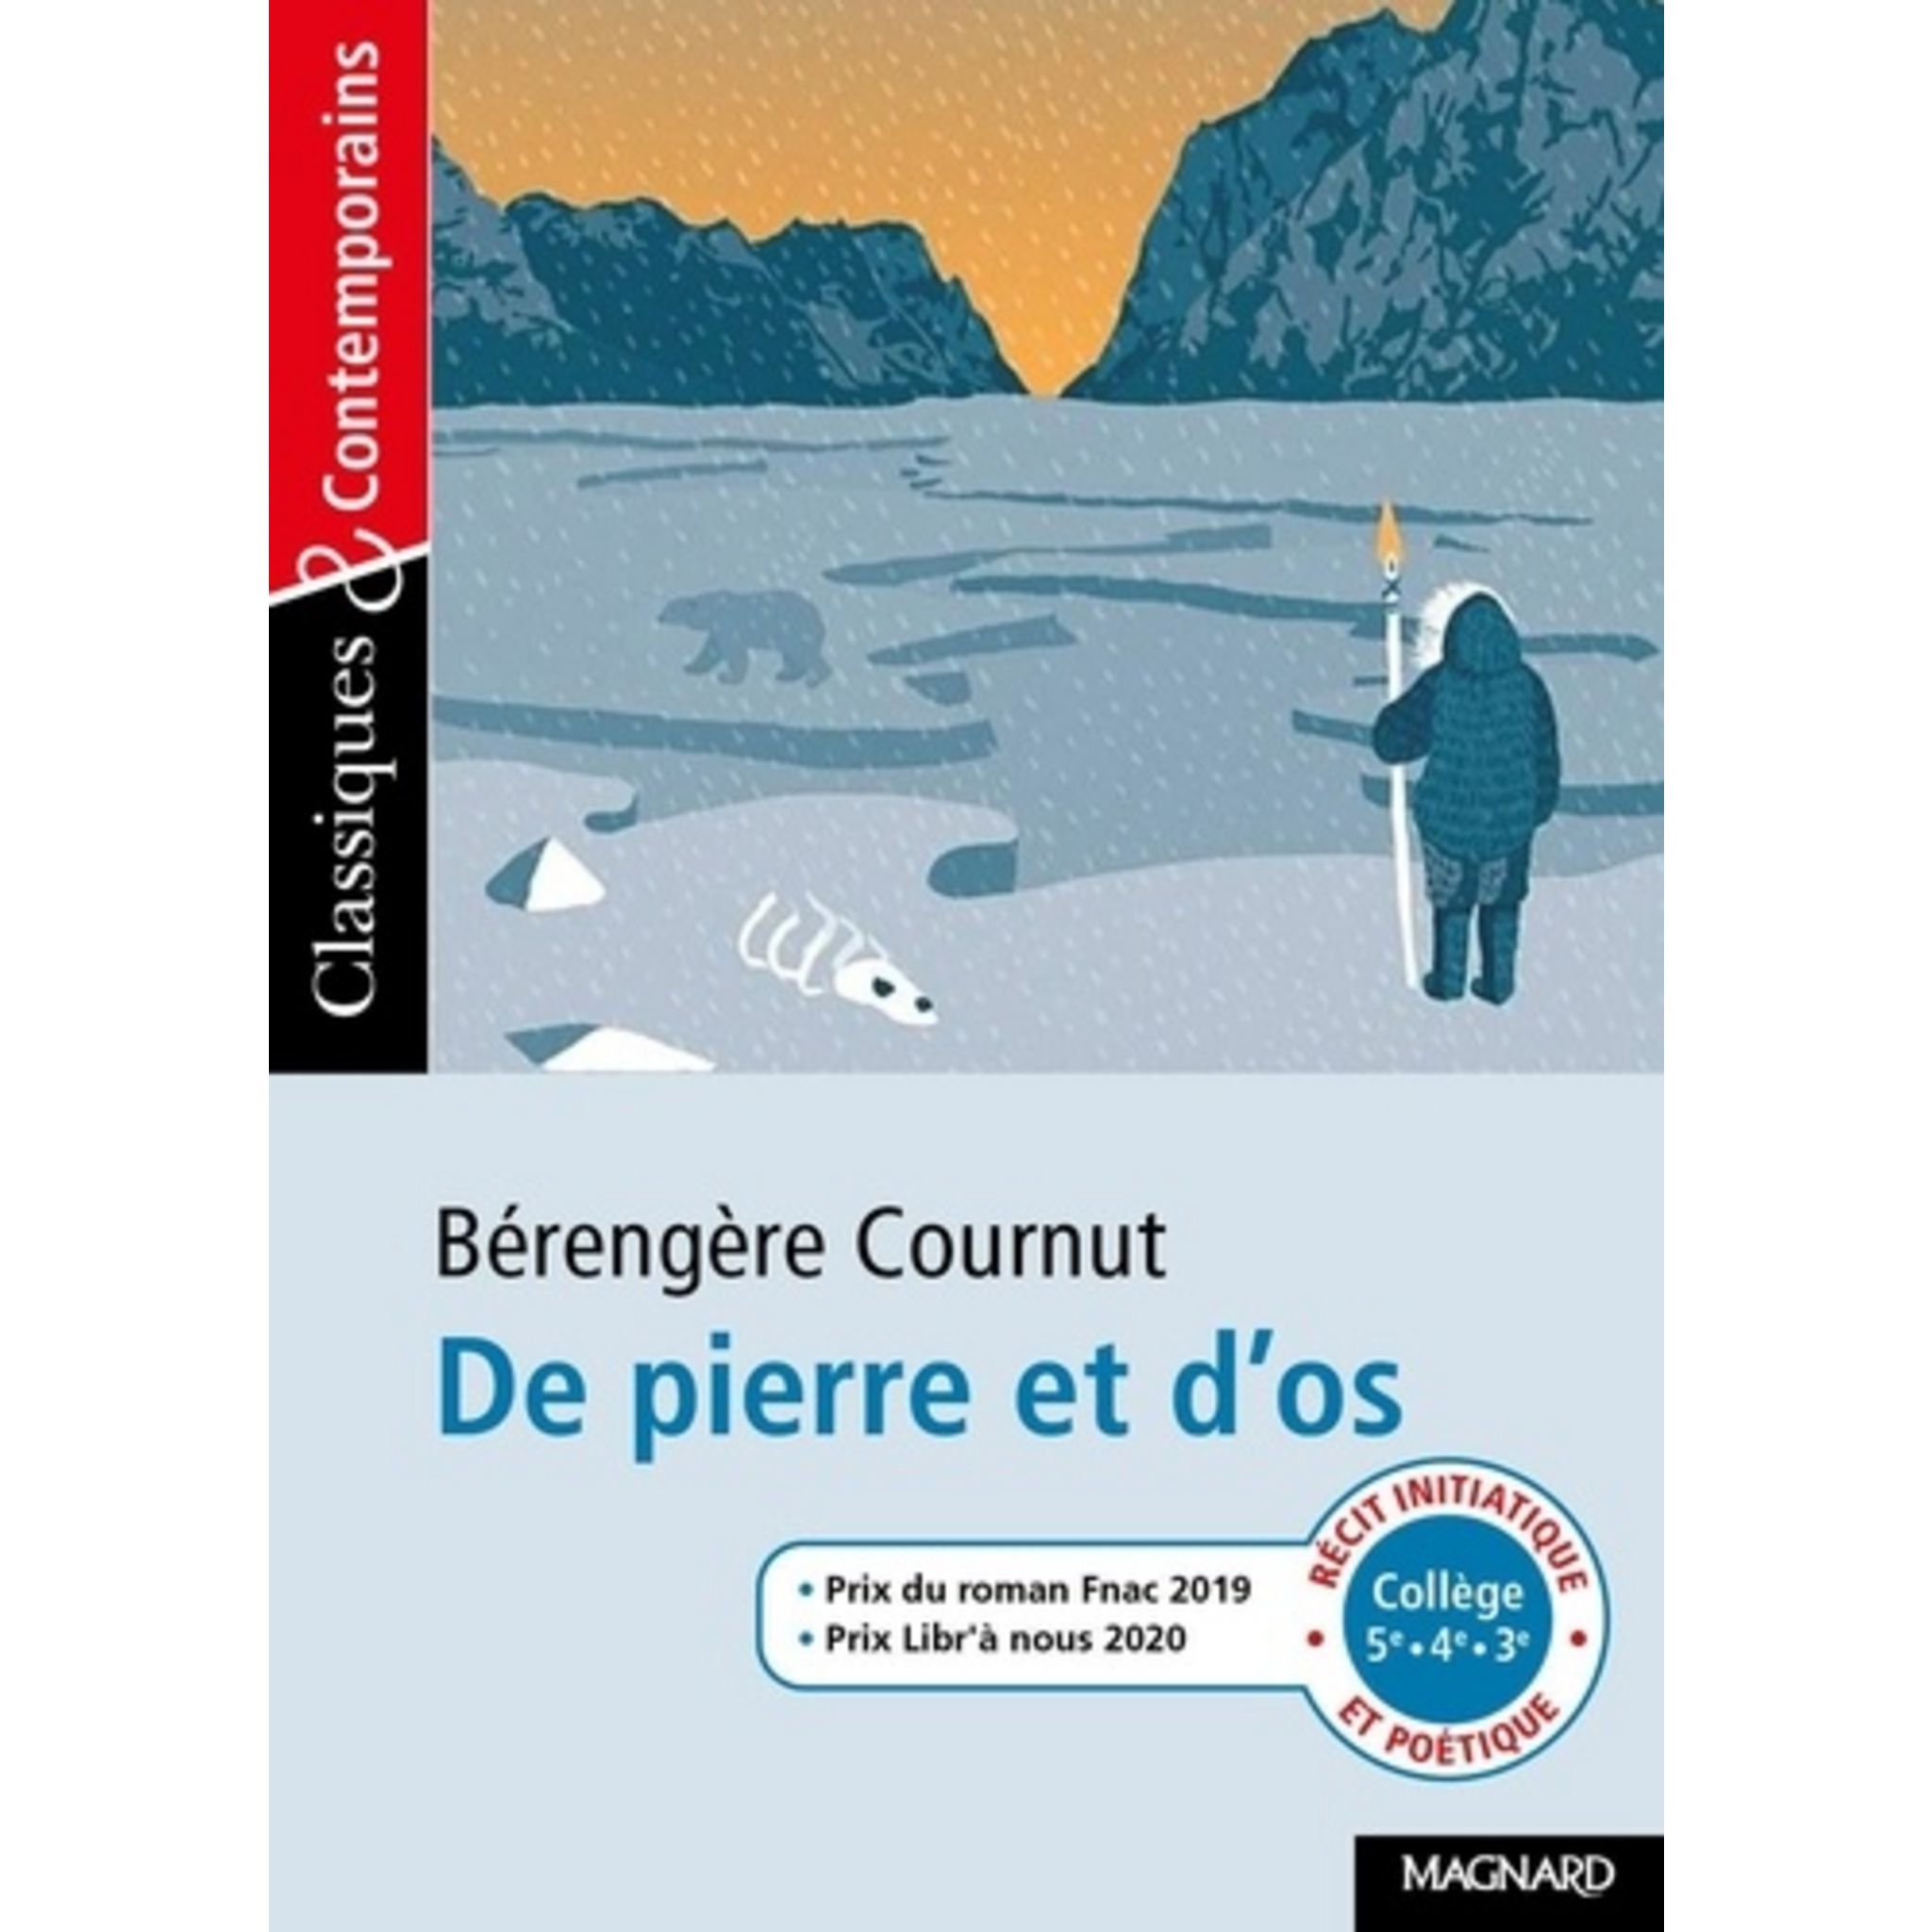 DE PIERRE ET D'OS, Cournut Bérengère